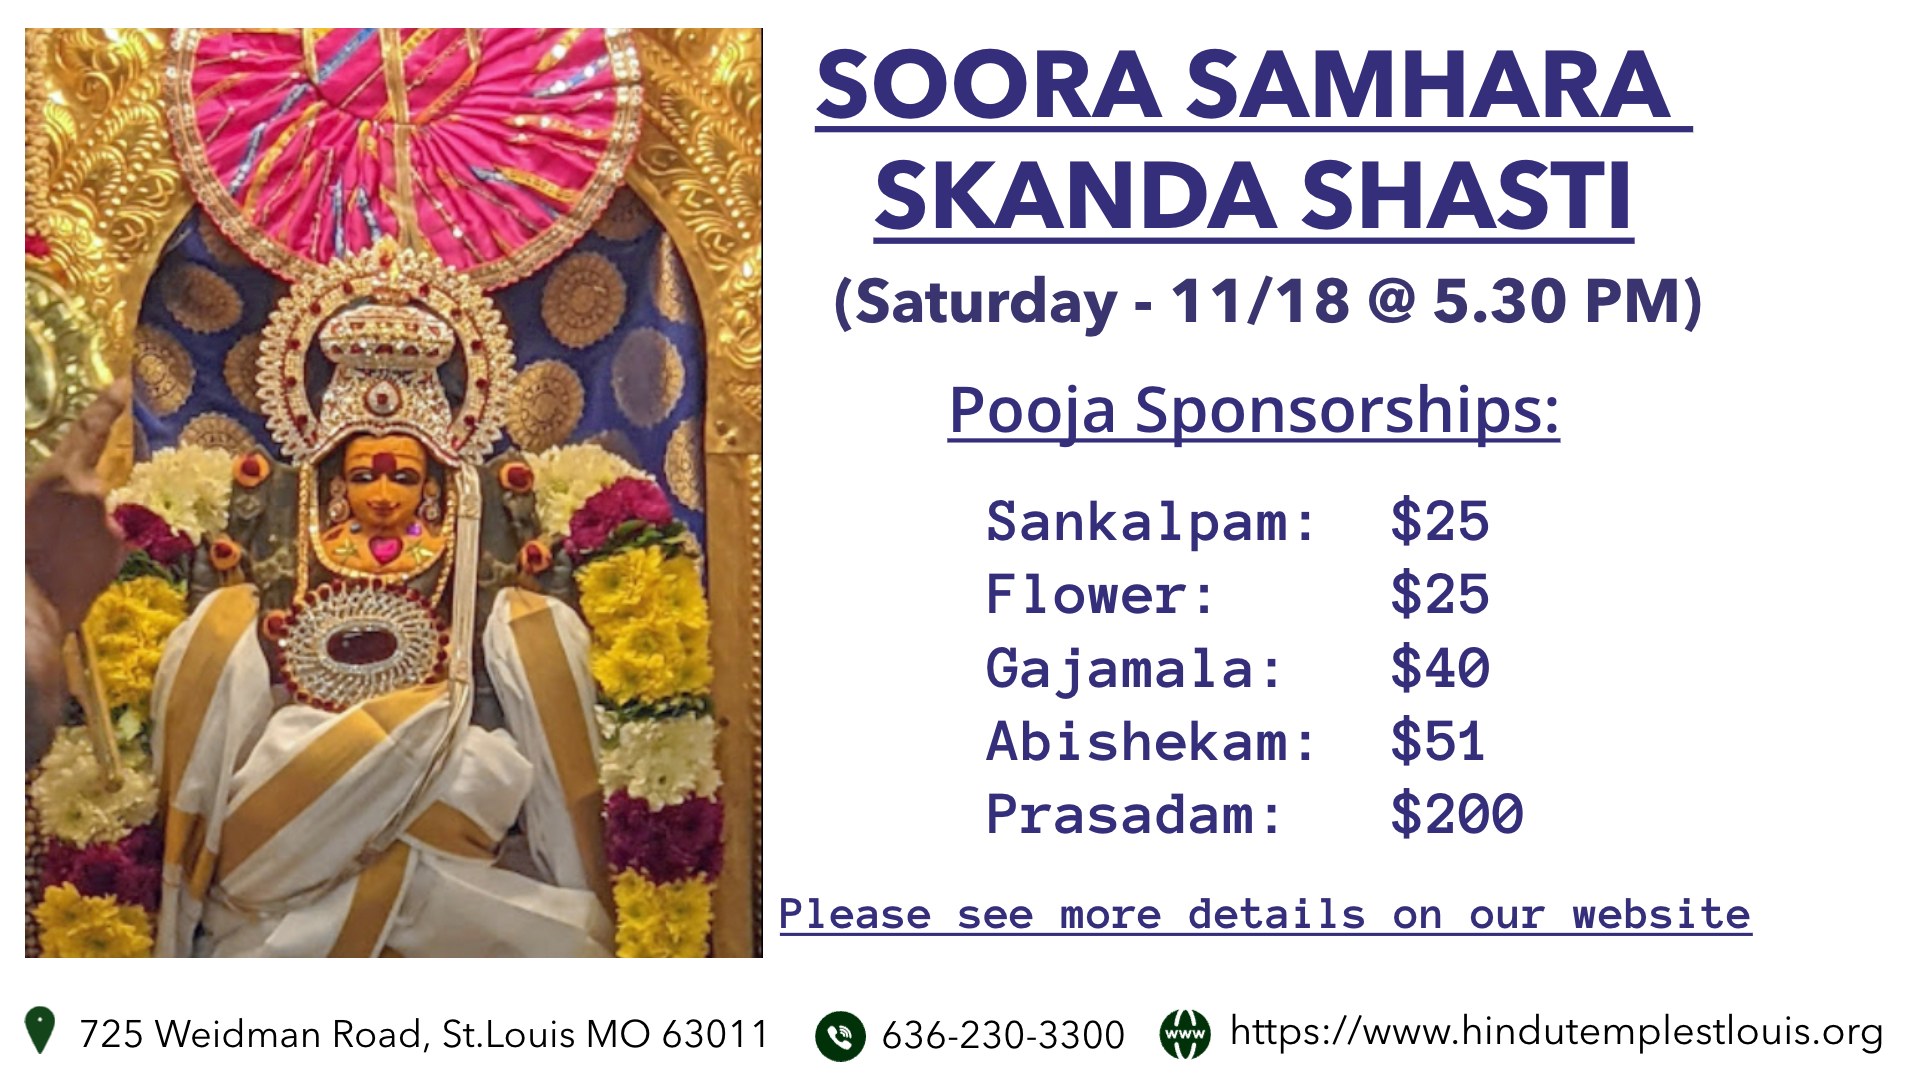 Soora Samhara Skanda Shasti